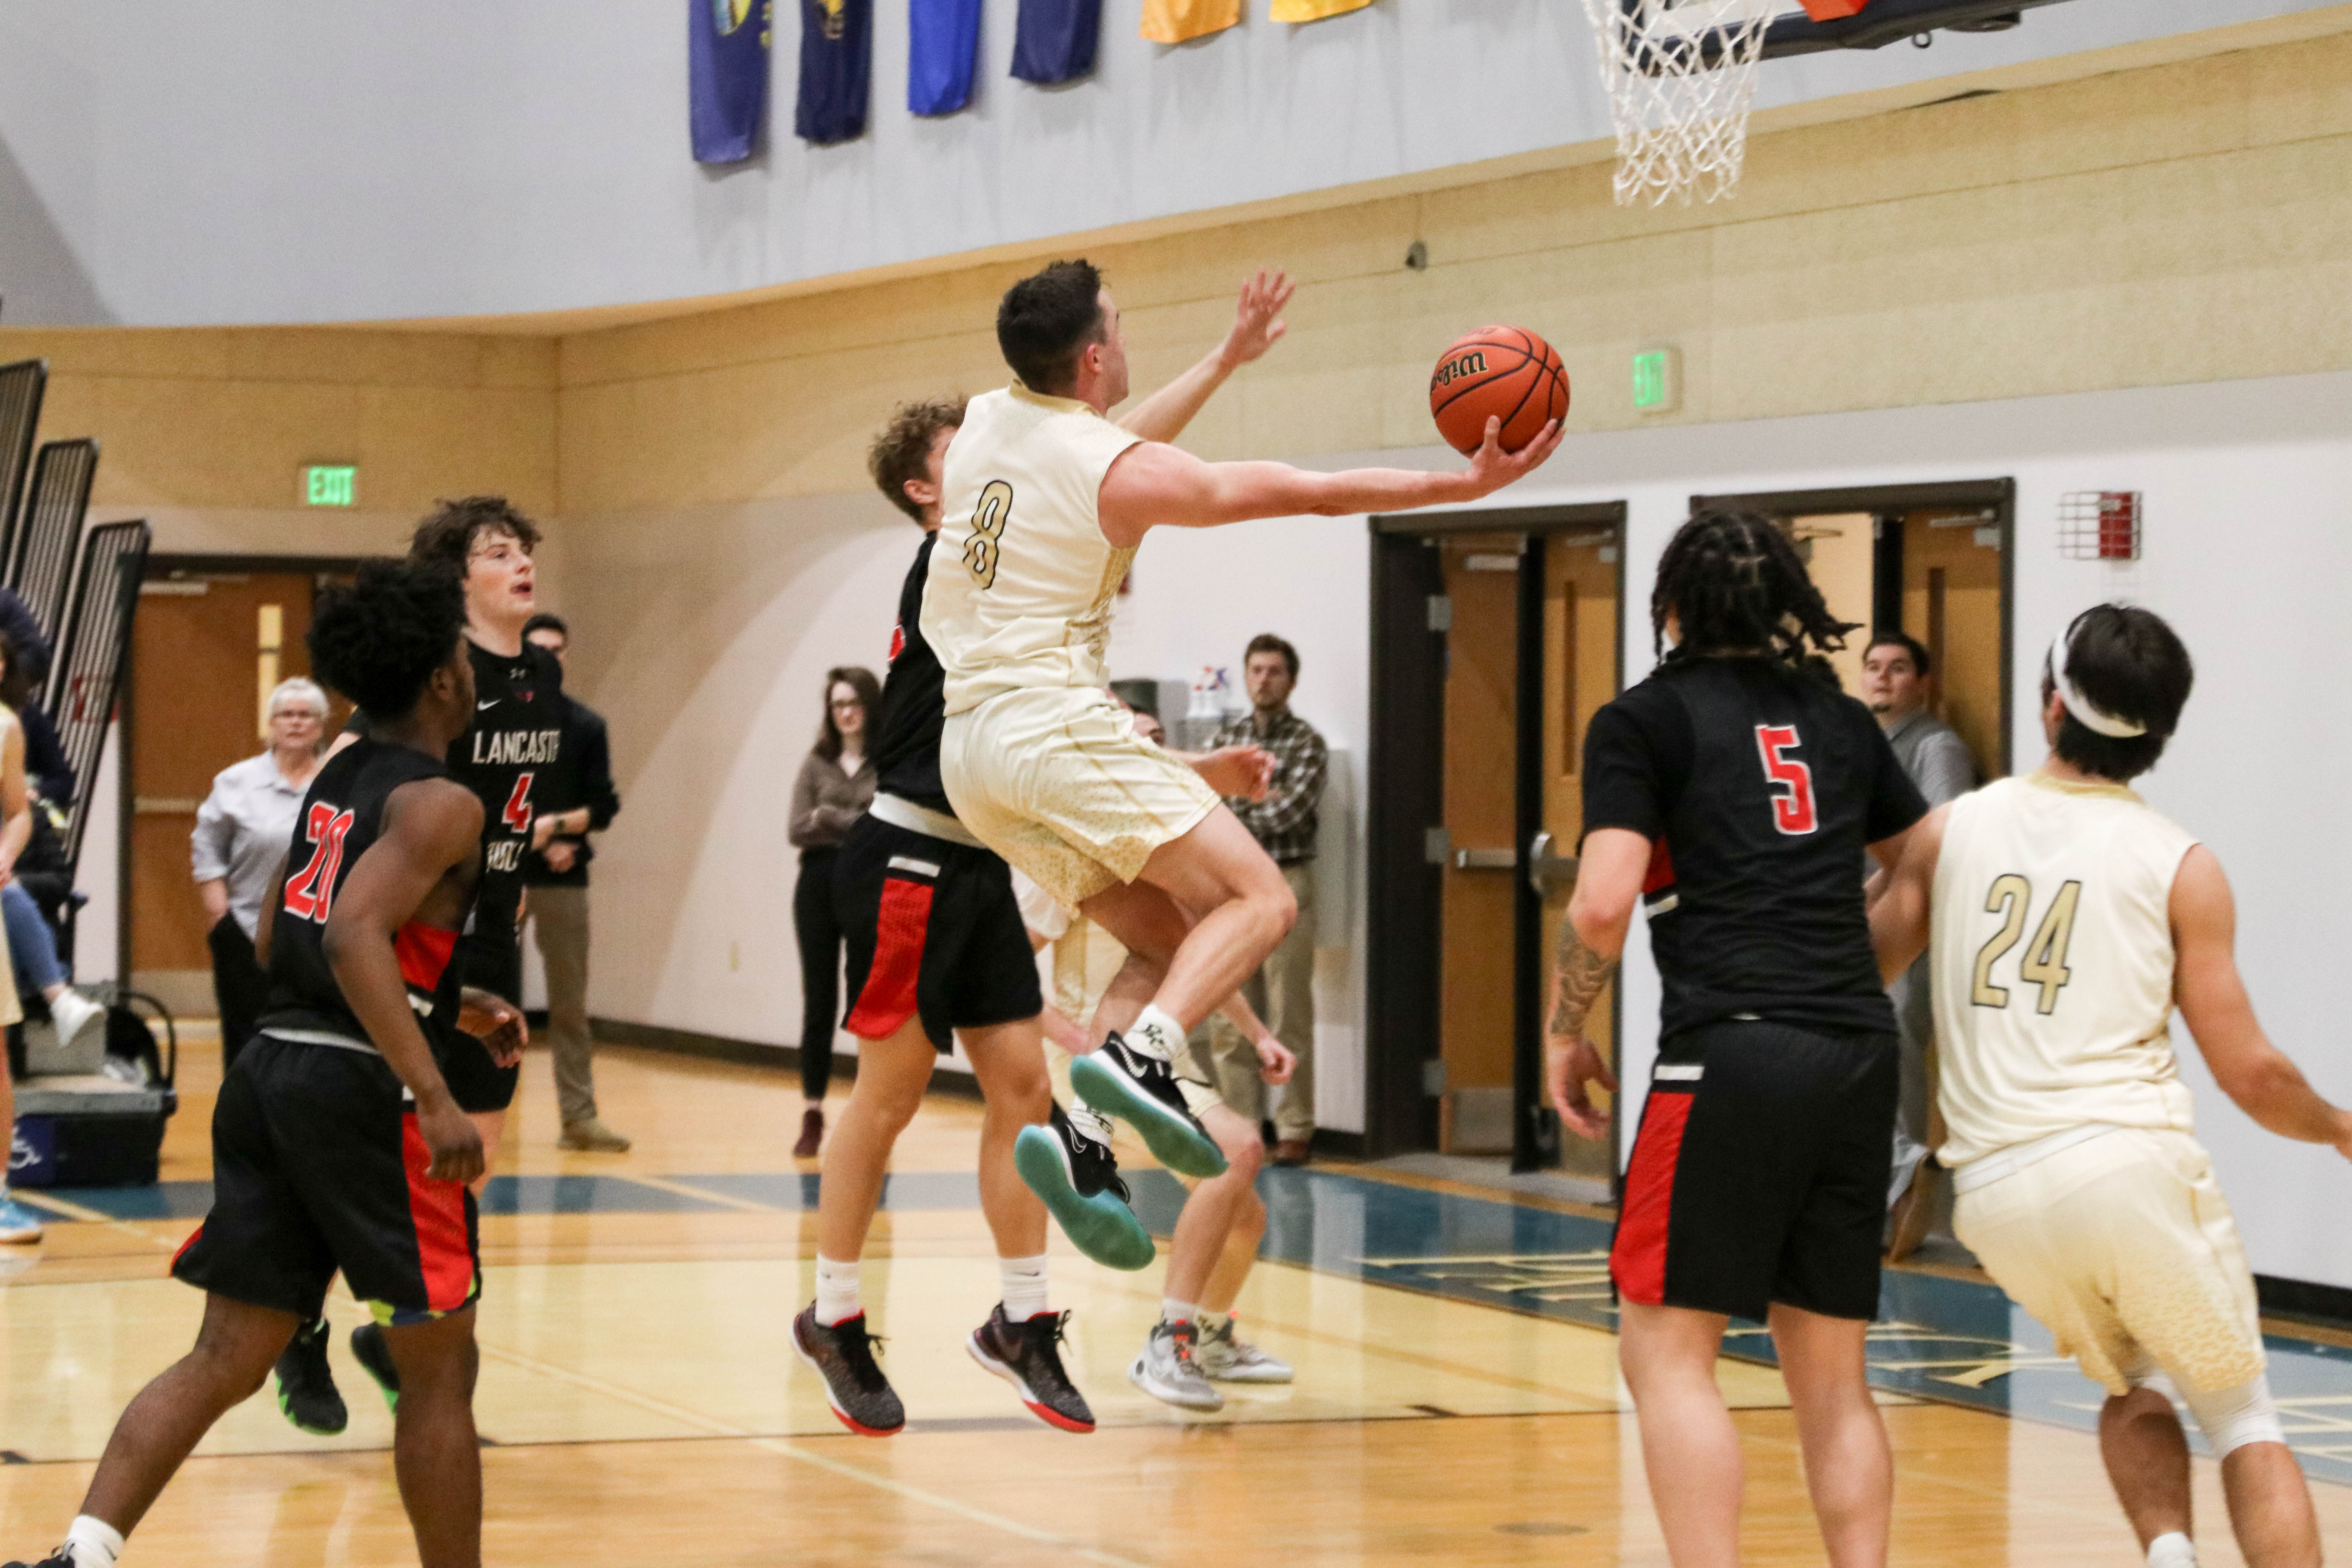 Freshman Zach Ward attacking the basket